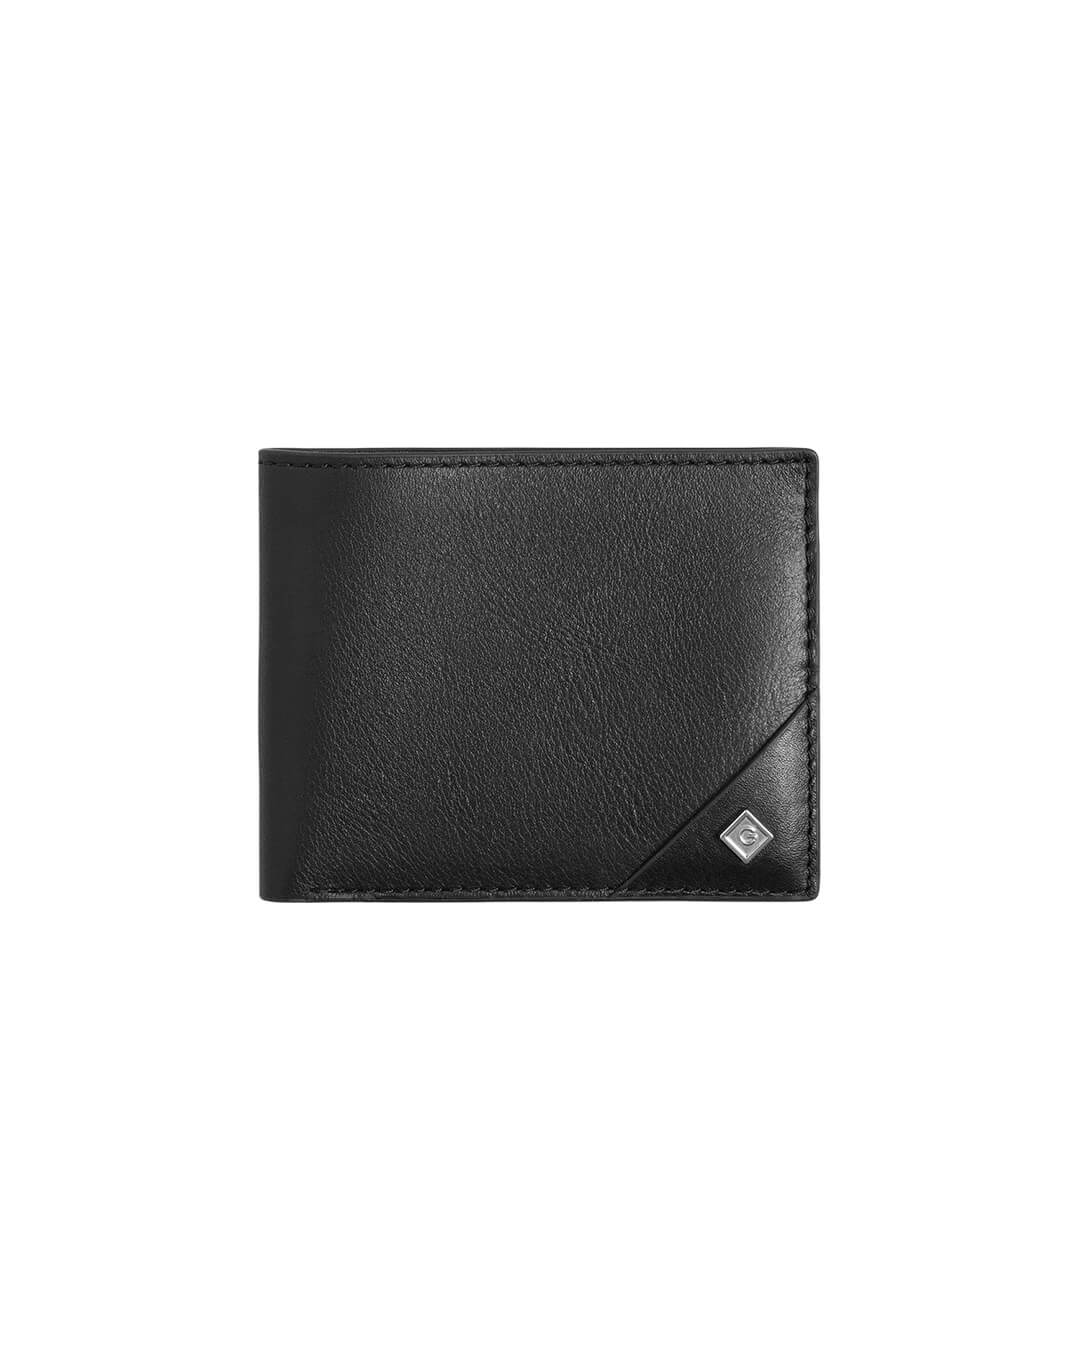 Gant Wallets ONE SIZE Gant Leather  Black Wallet